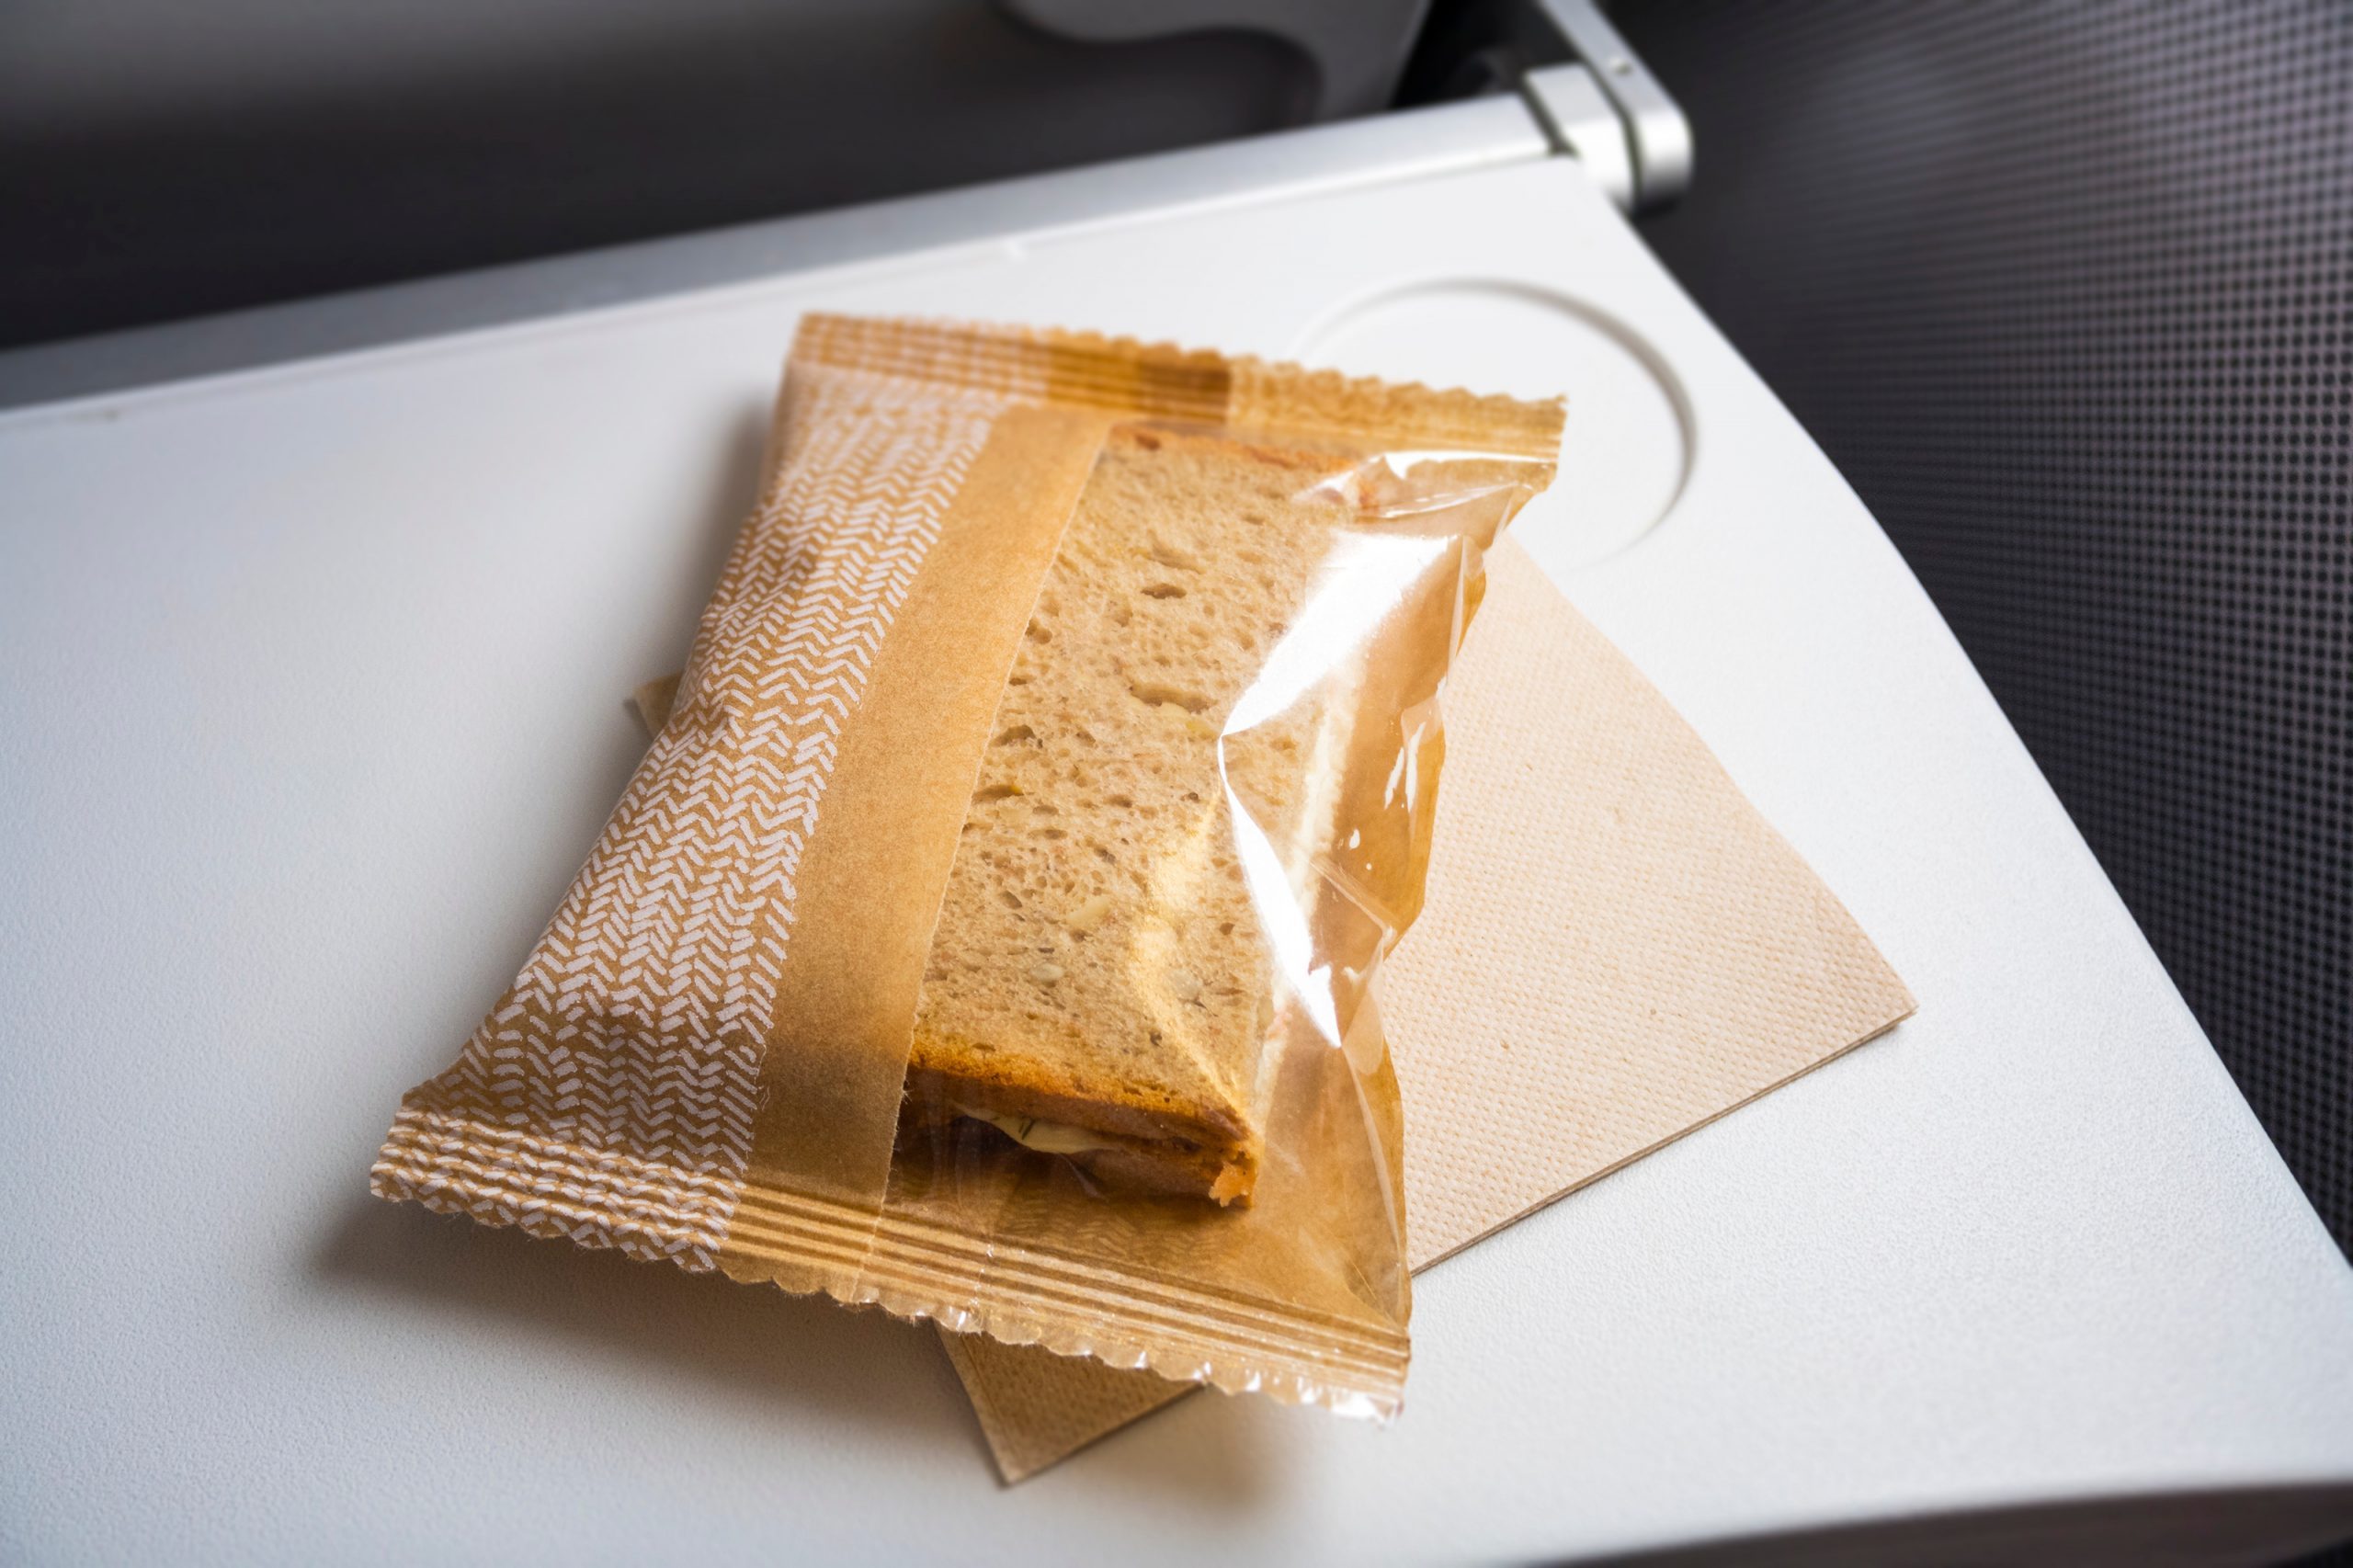 Bisakah Anda Membawa Makanan di Pesawat? Aturan TSA yang Perlu Anda Ketahui 